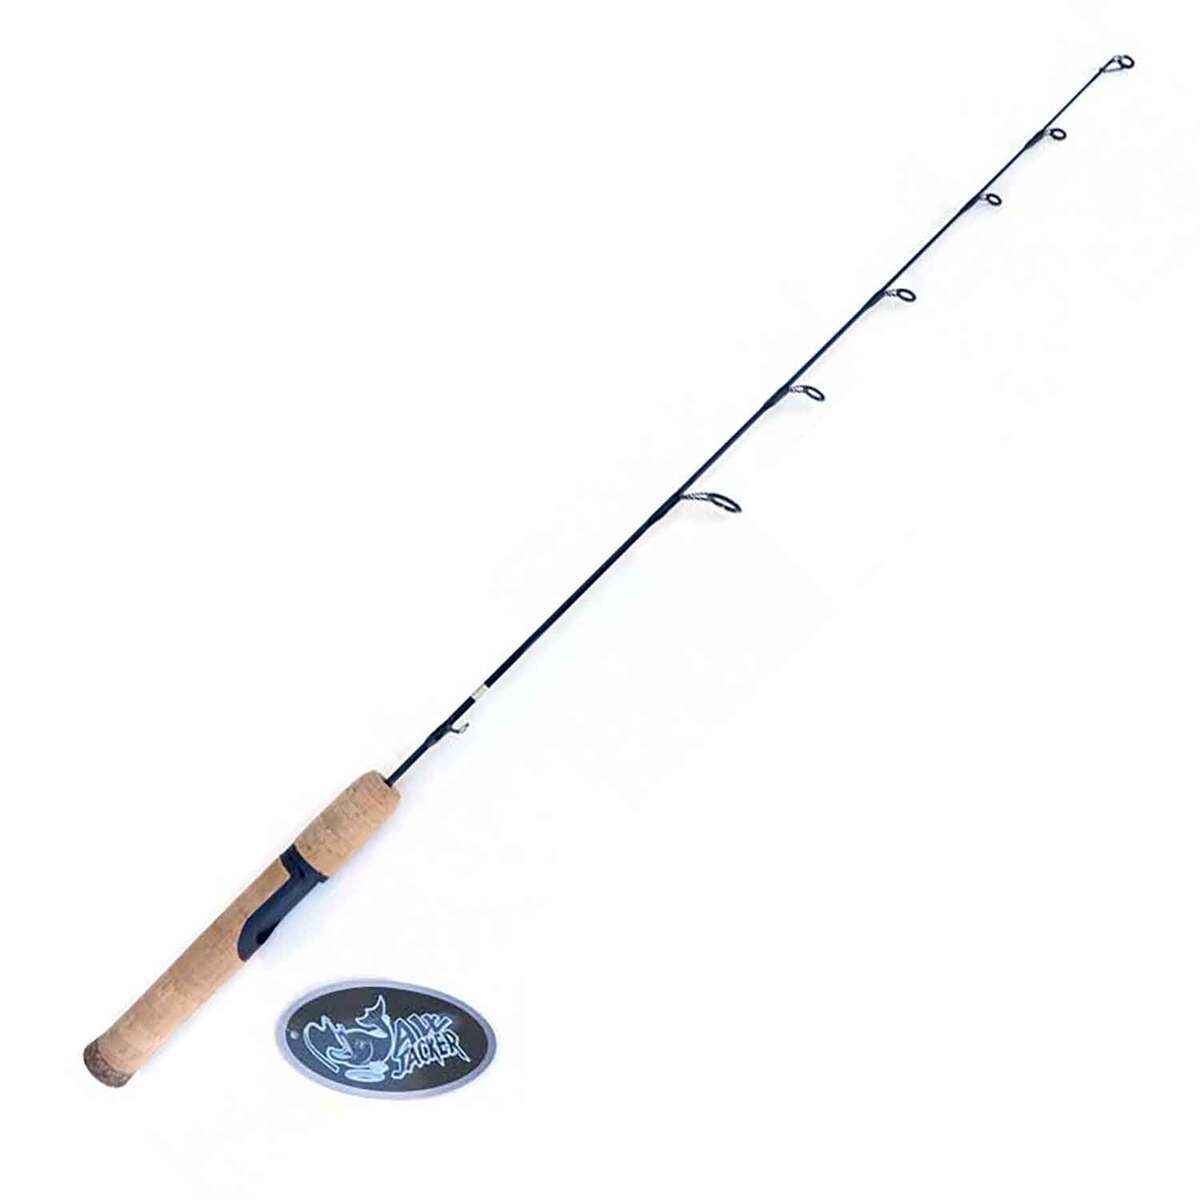 1 Set Hollow Fishing Rod Handle Fishing Rod Handle Grip Reel Seat Kit